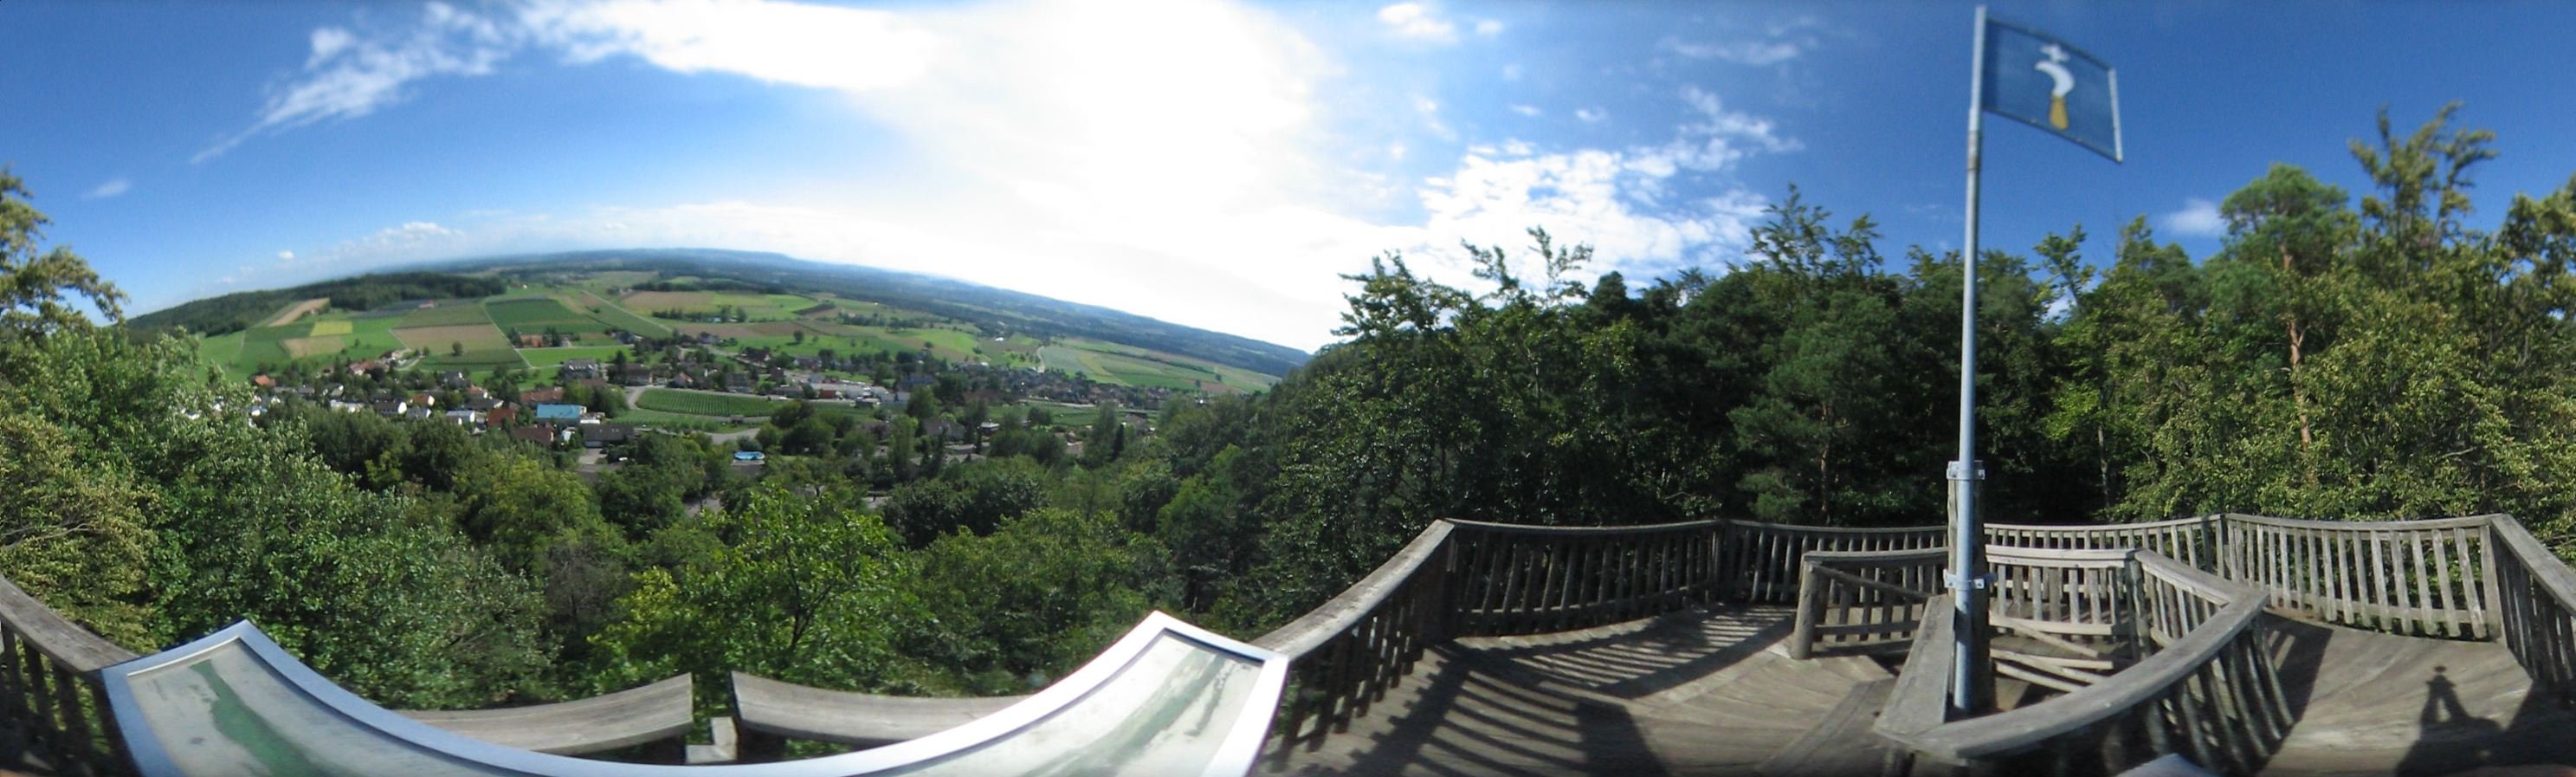 Uhwieser Hoernli Aussichtsturm. Blick aufs Weinland.